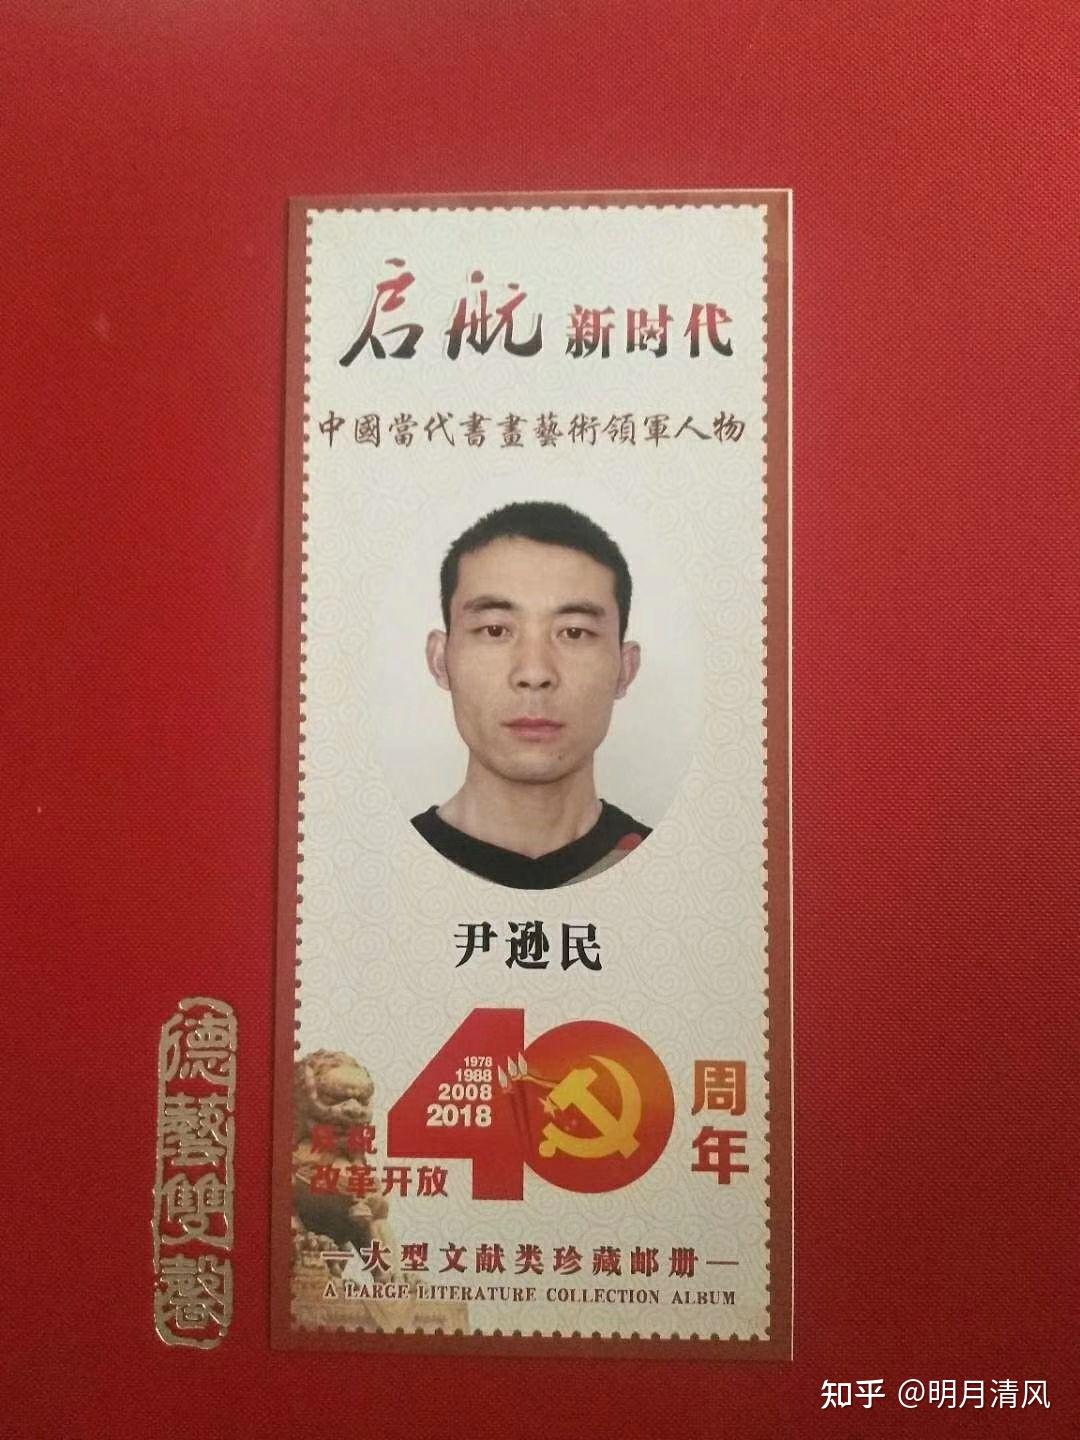 圣丽塔酒庄集团徐珊荣获2021中国行业影响力品牌“领军人物” - 哔哩哔哩